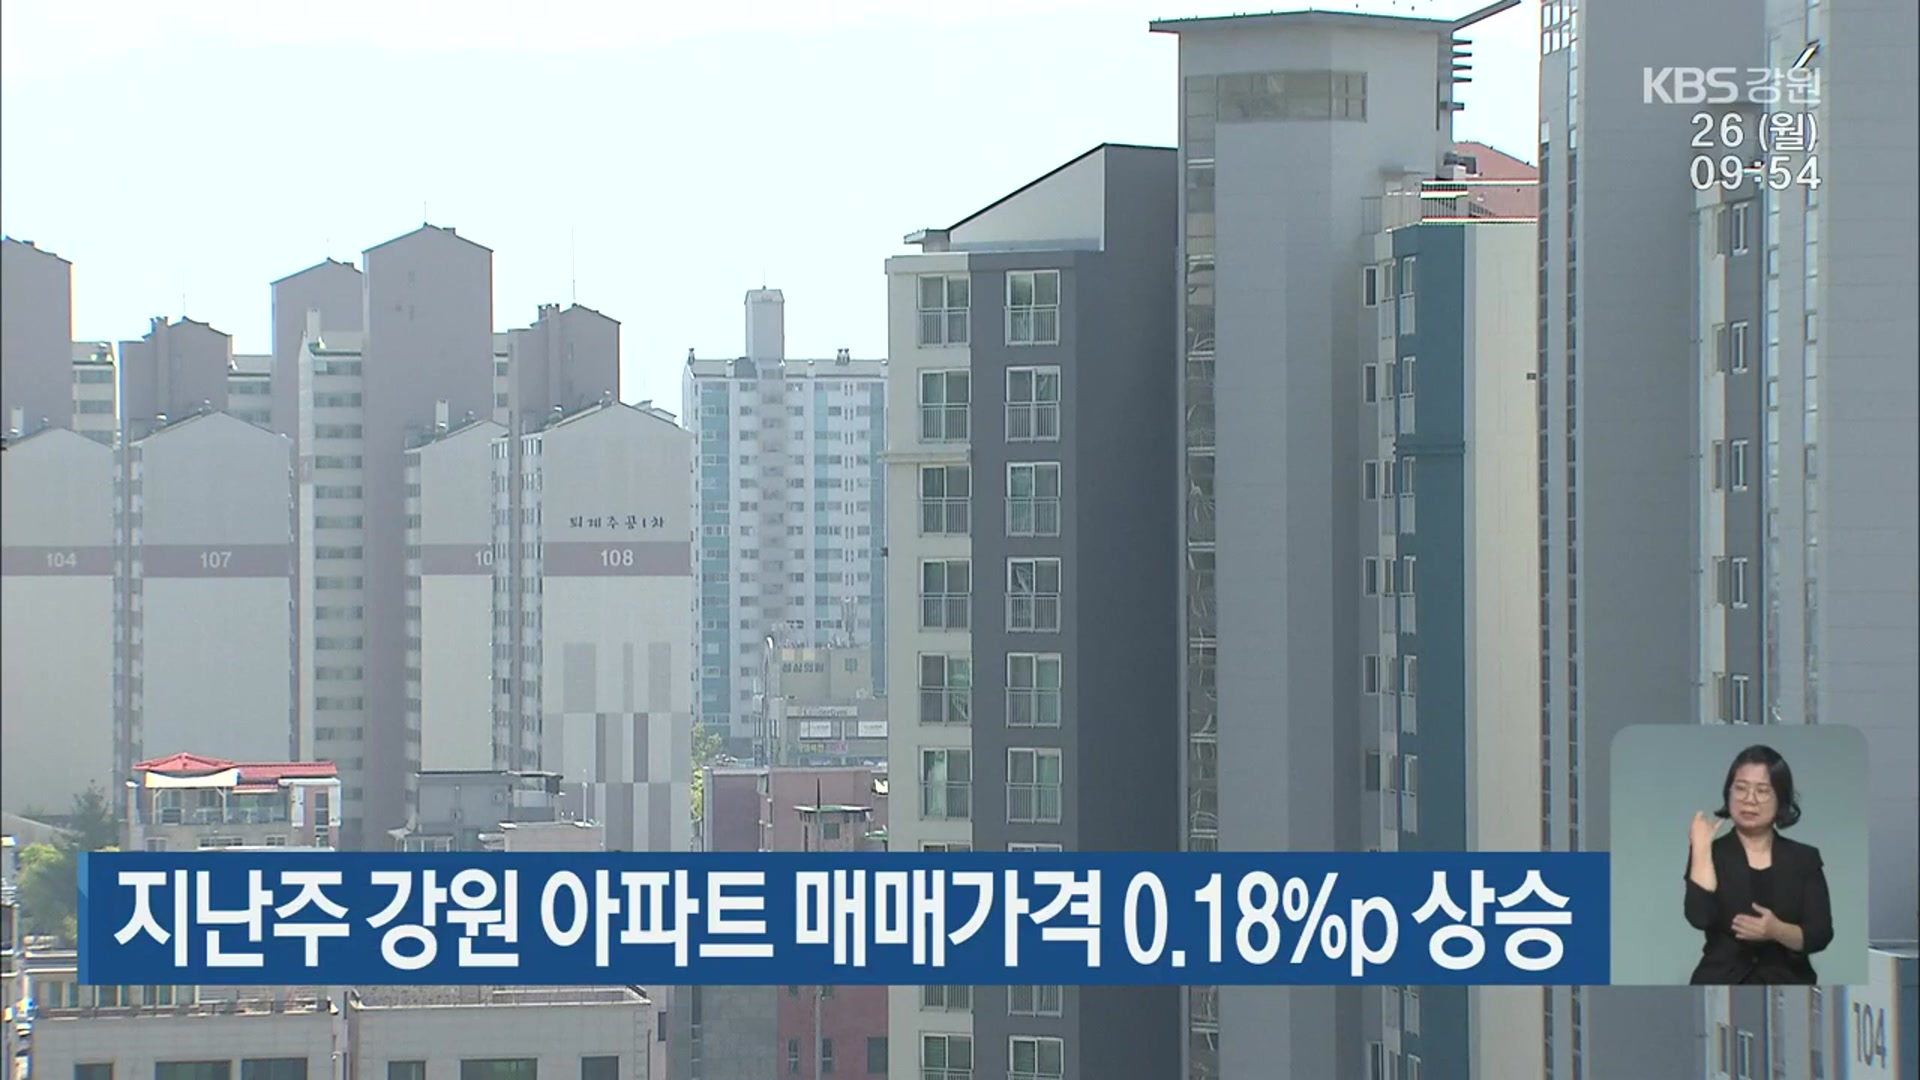 지난주 강원 아파트 매매가격 0.18%p 상승